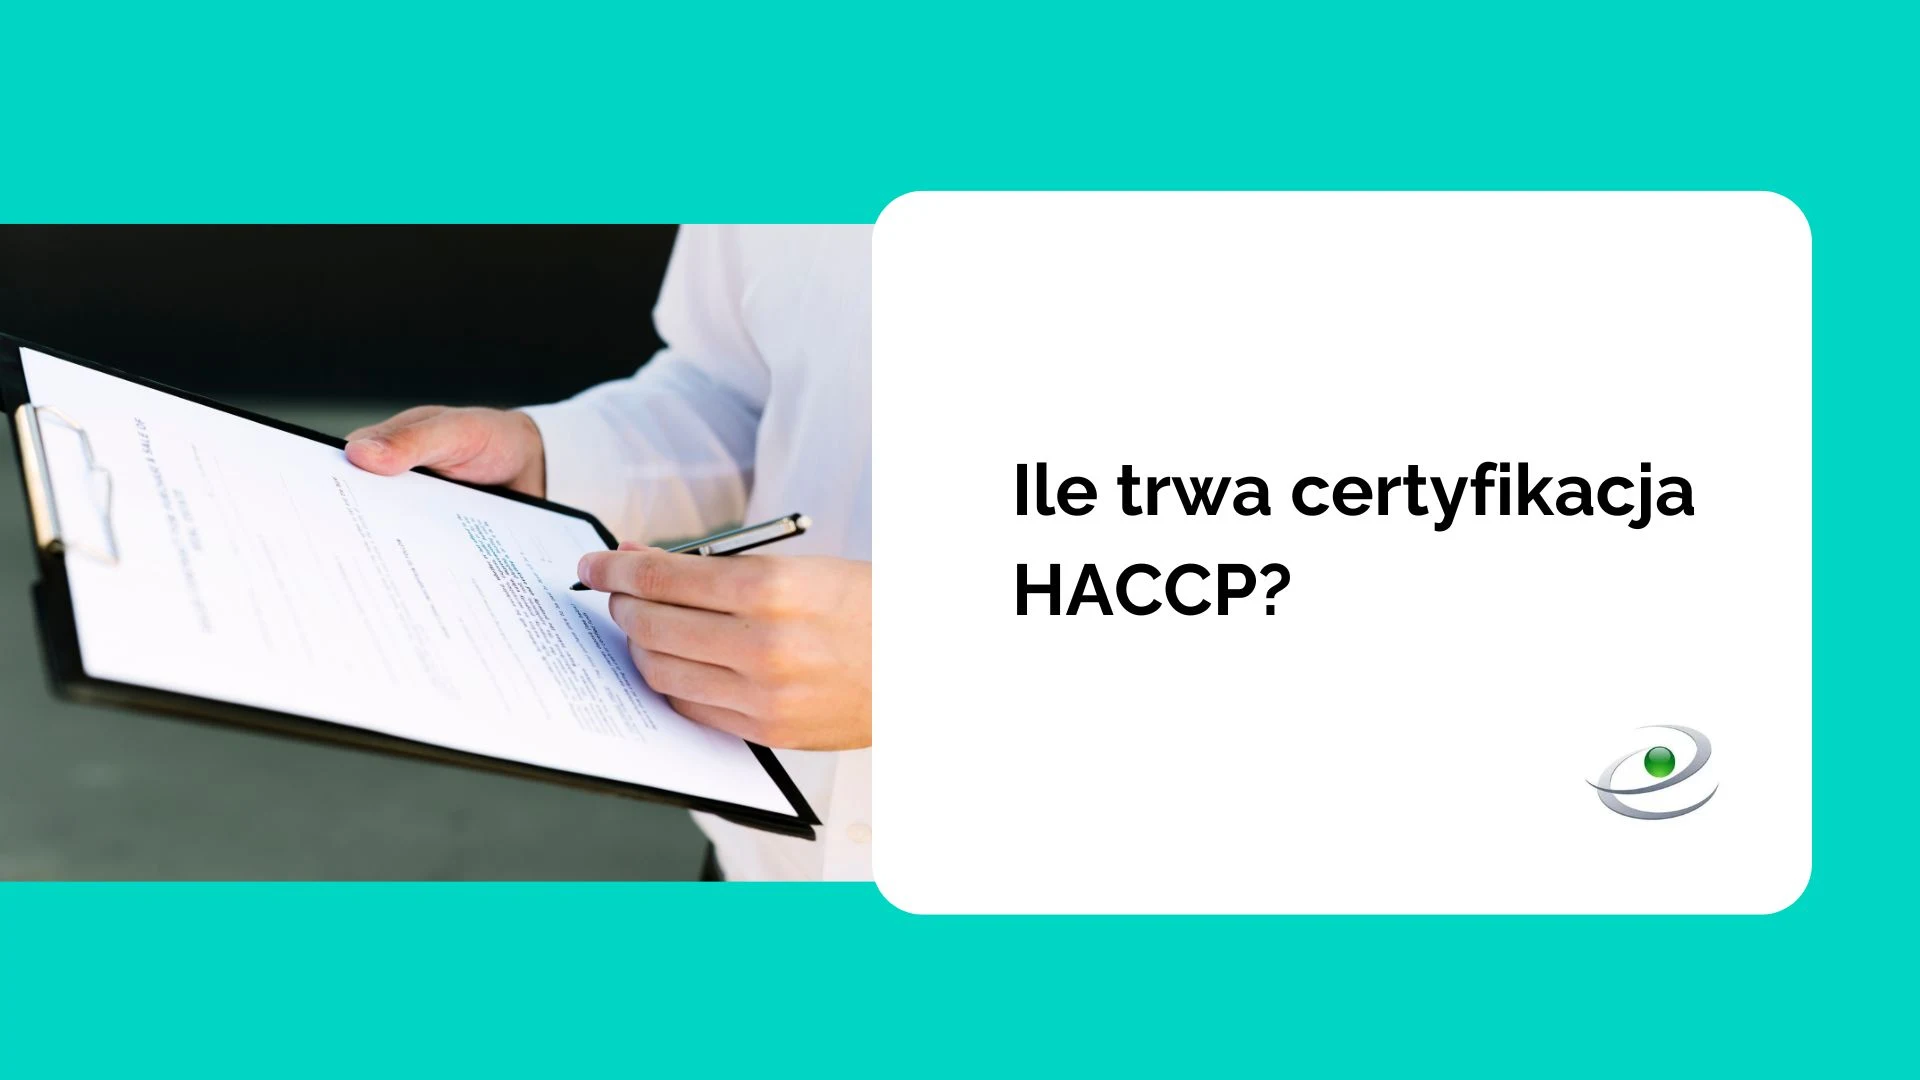 Jak uzyskać certyfikat HACCP i ile twra certyfikacja?